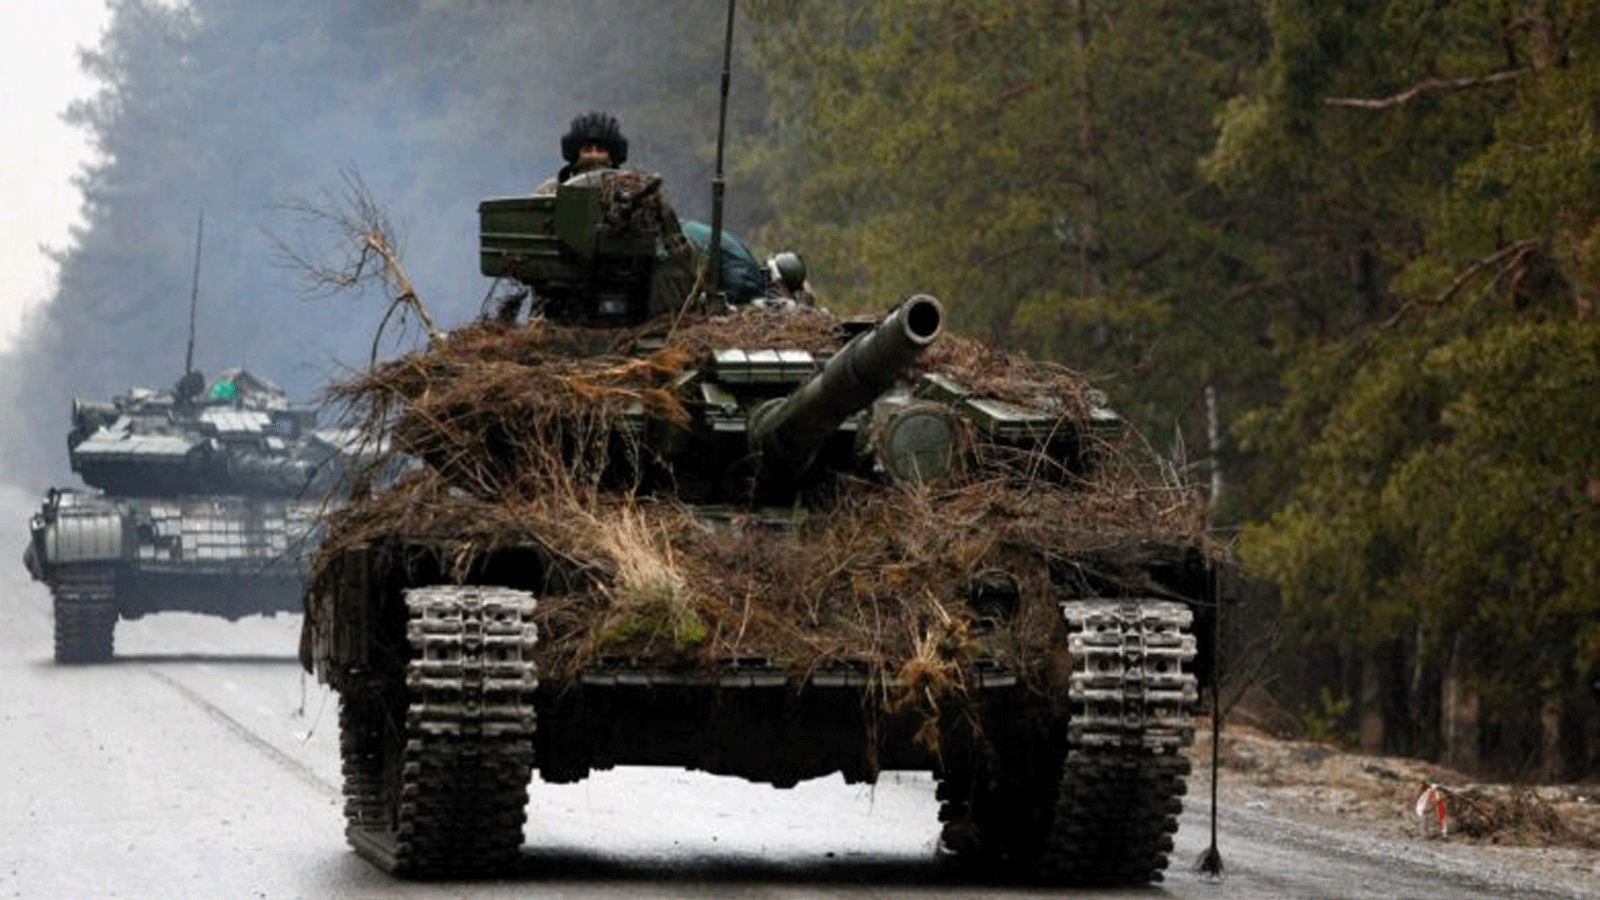 دبابات أوكرانية تتحرك على طريق قبل هجوم في منطقة لوغانسك